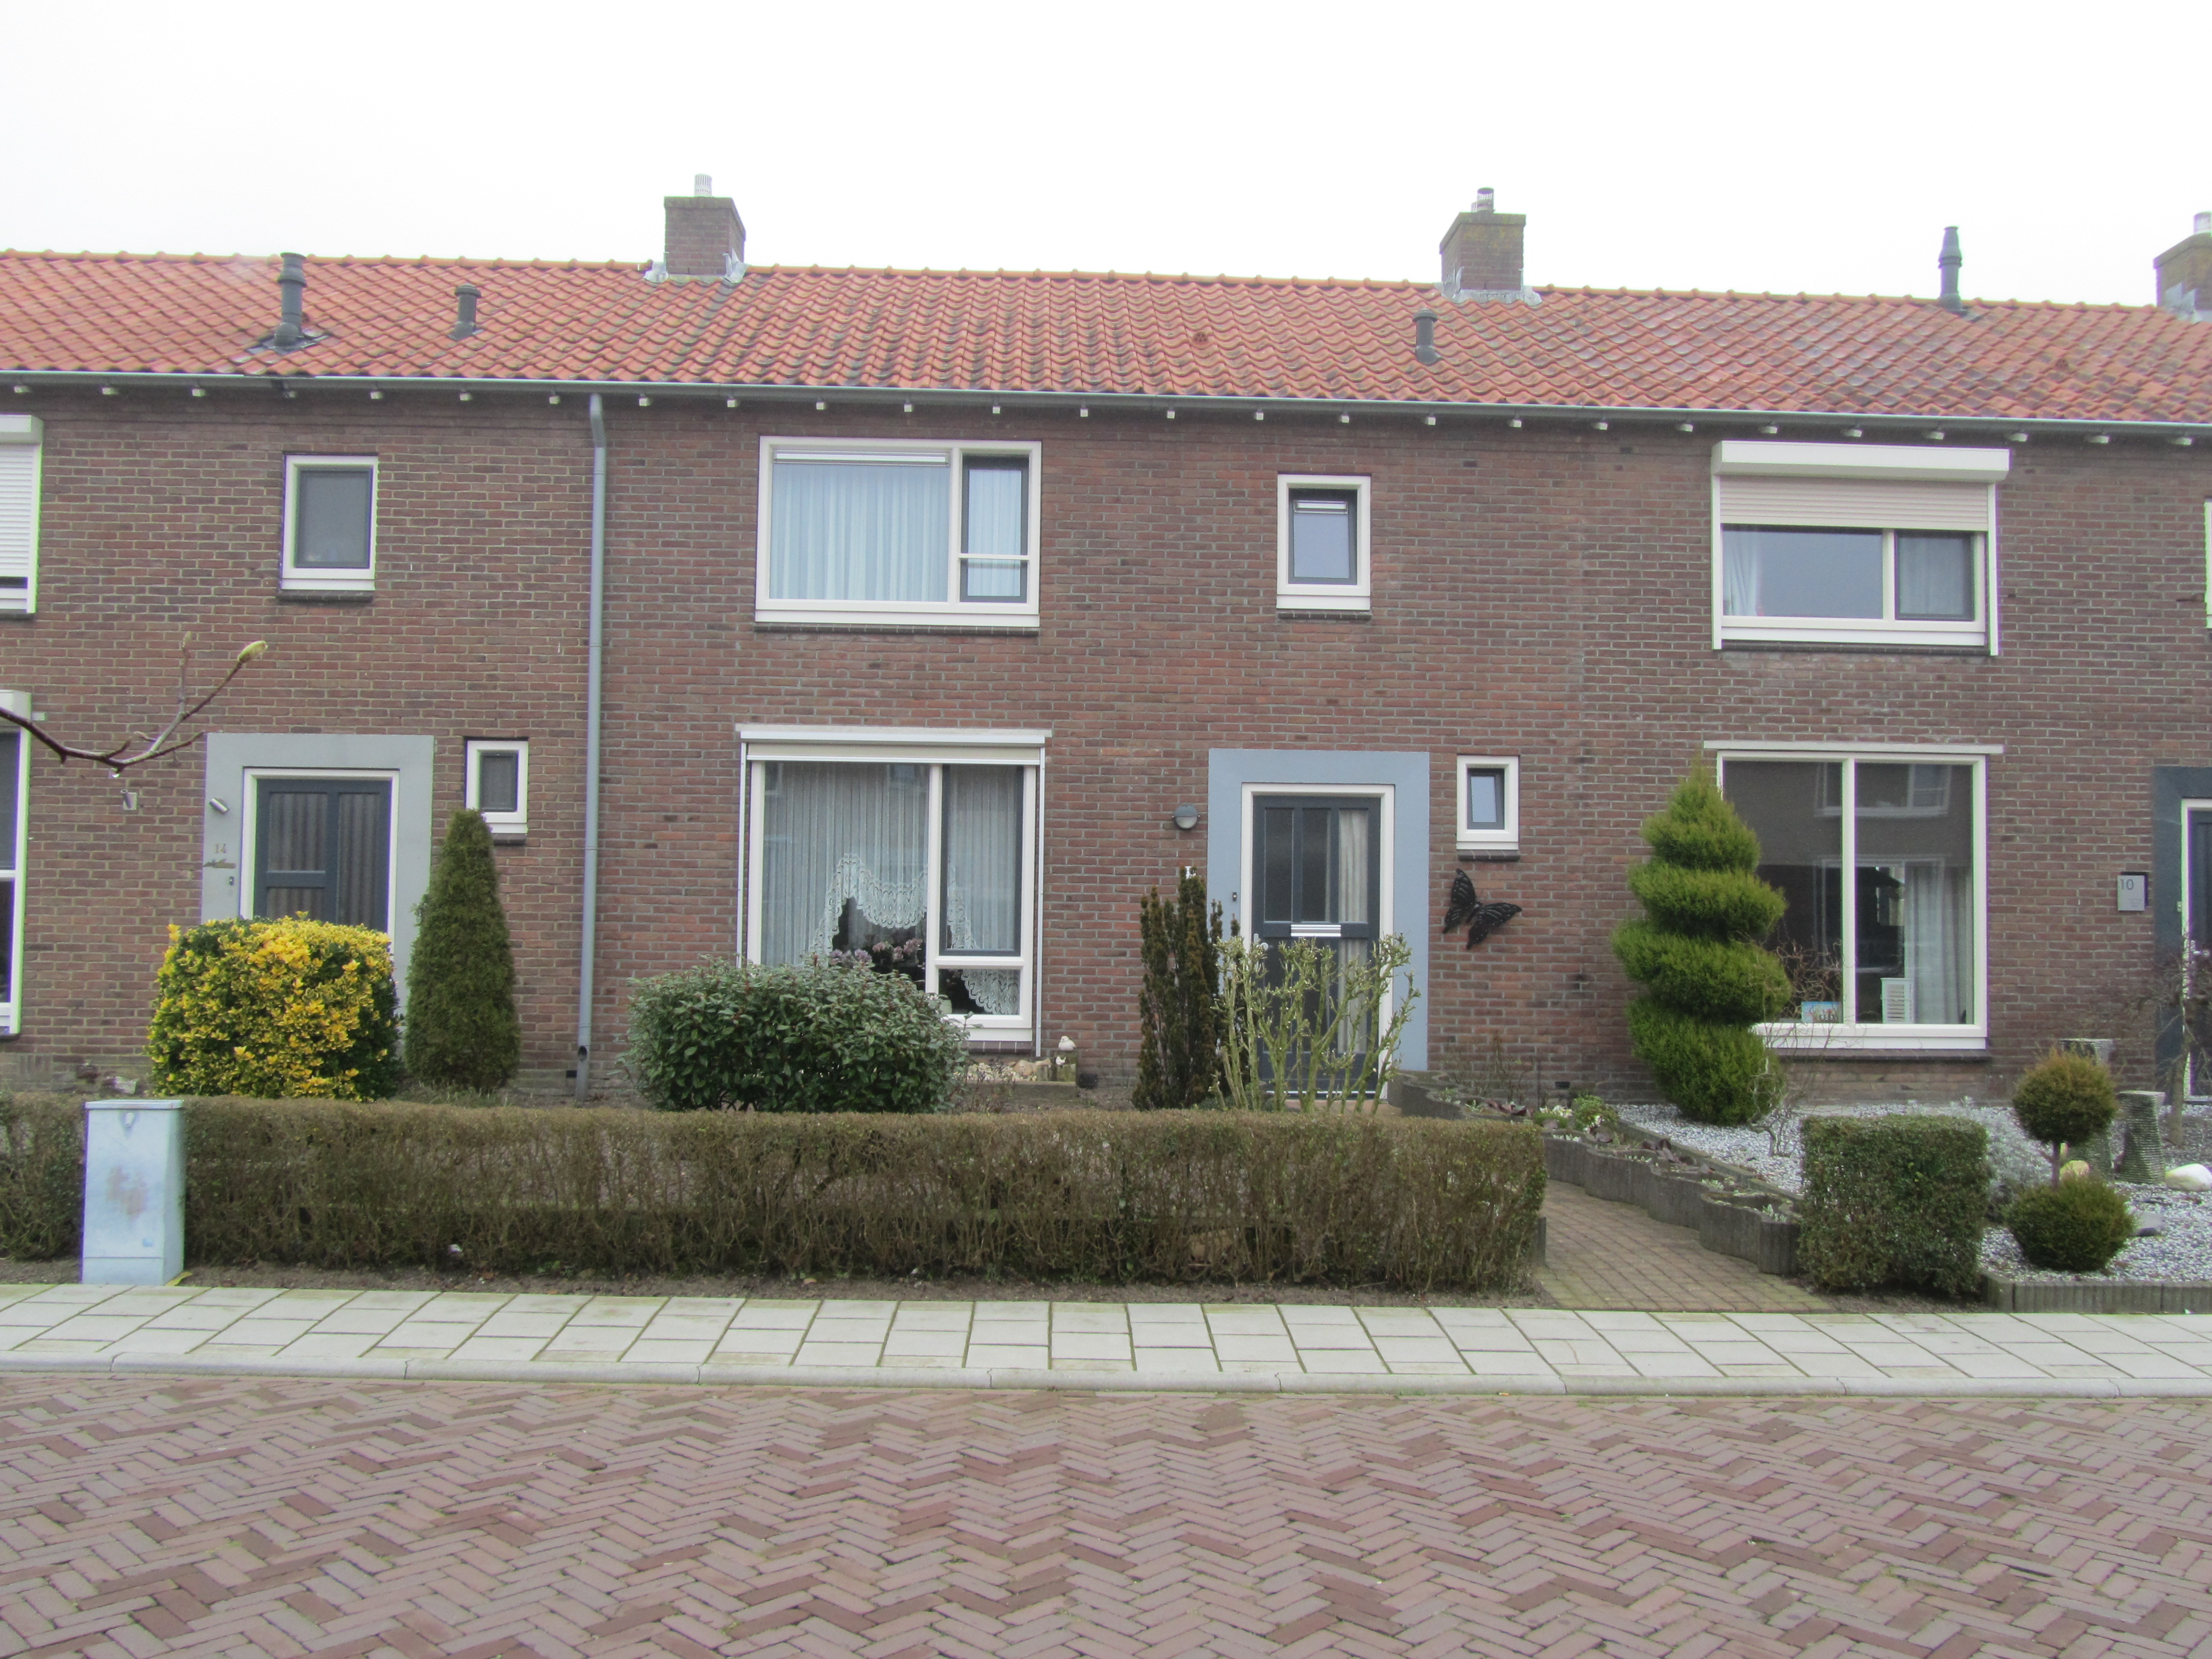 K.P. van der Veldestraat 12, 7161 ZR Neede, Nederland